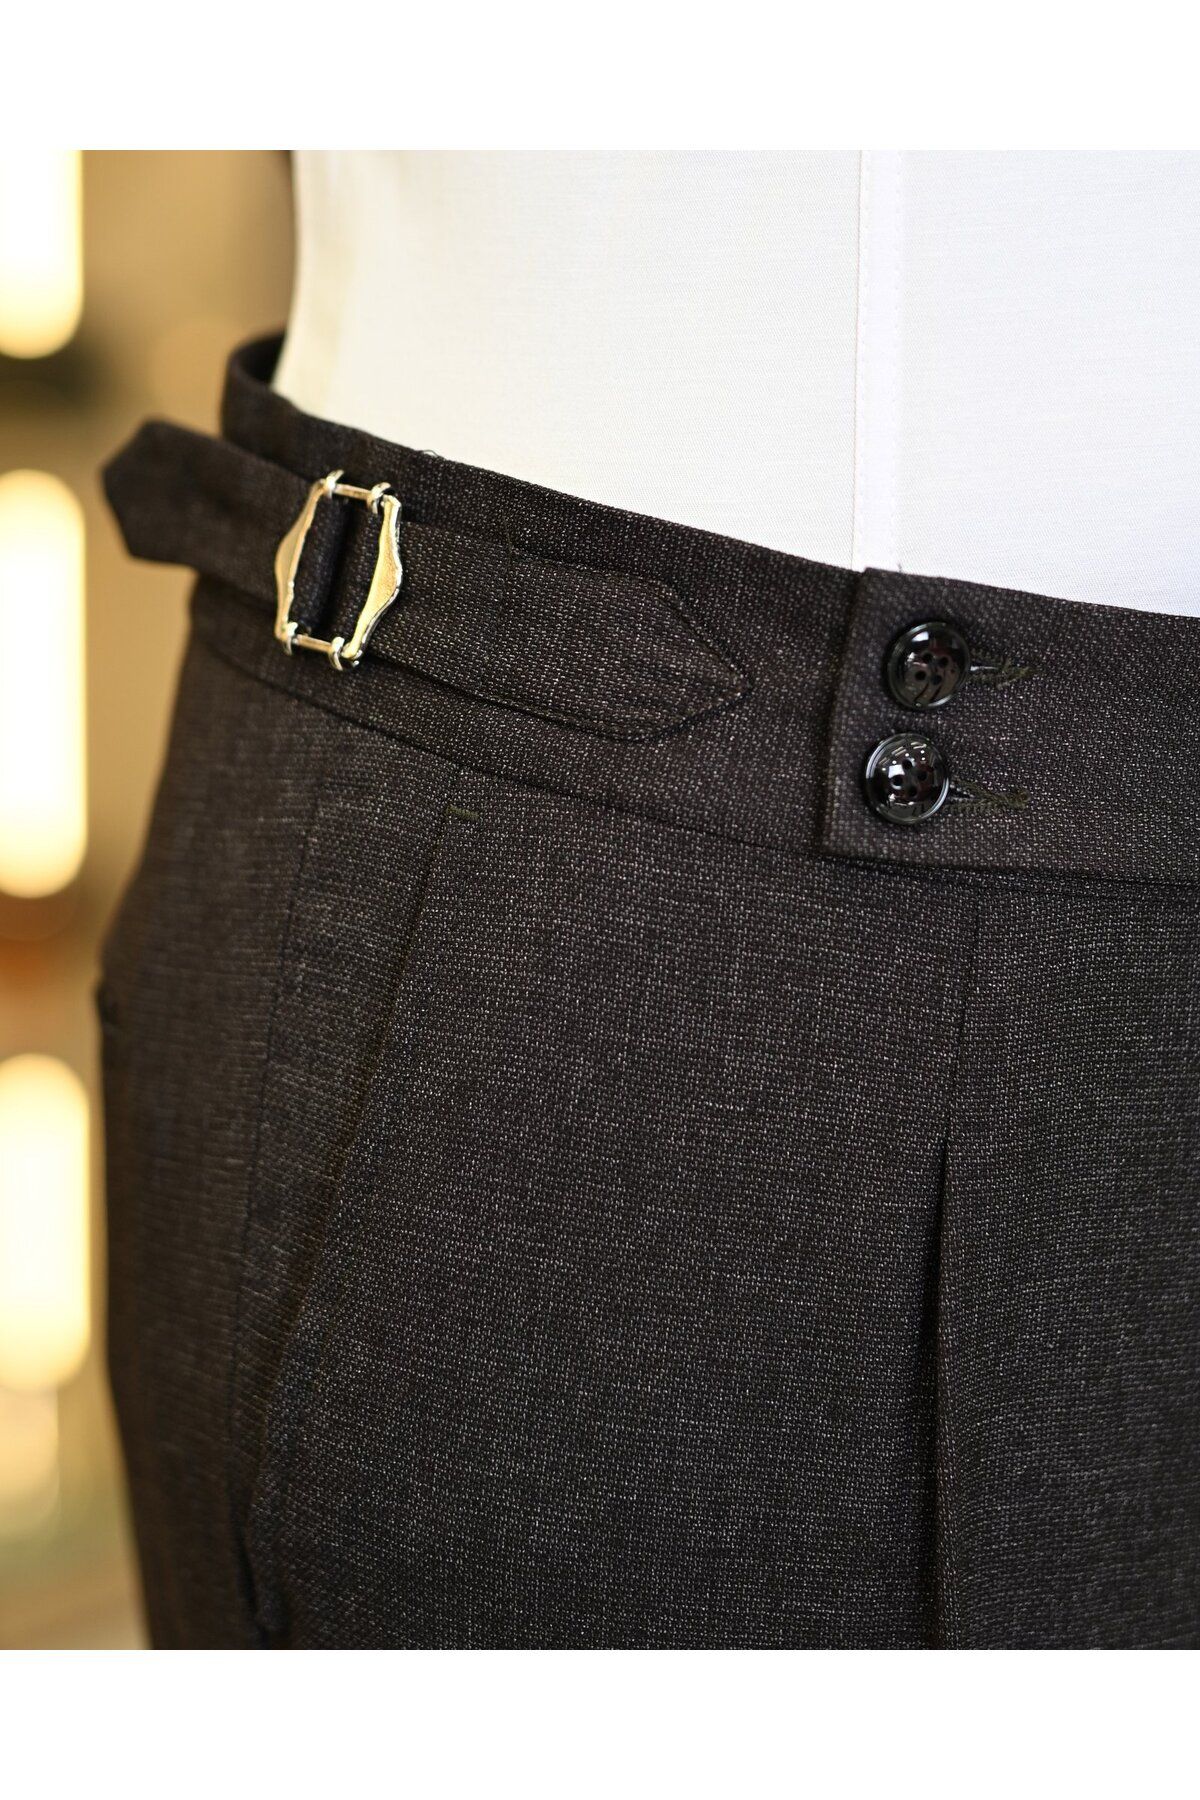 TerziAdemAltun İtalyan stil ceket yelek pileli pantolon takım elbise bordo T11315